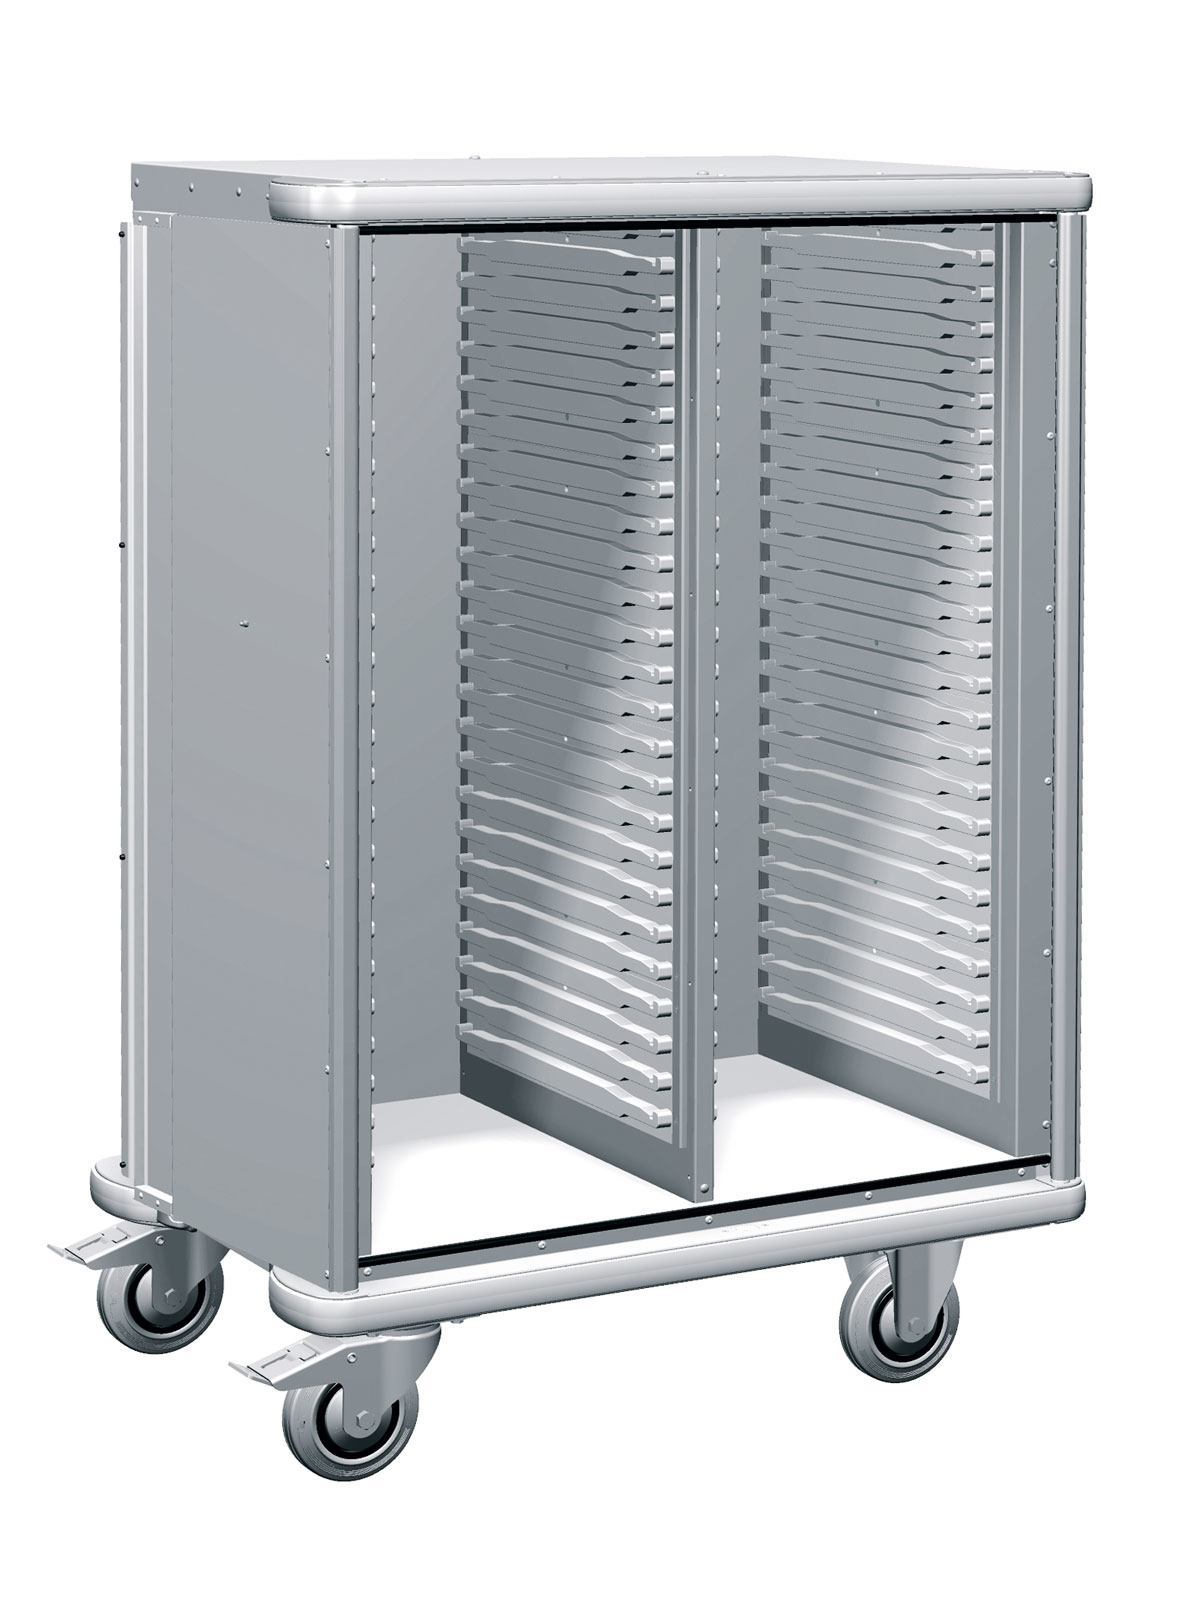 W105 Storage cart SKU 379453